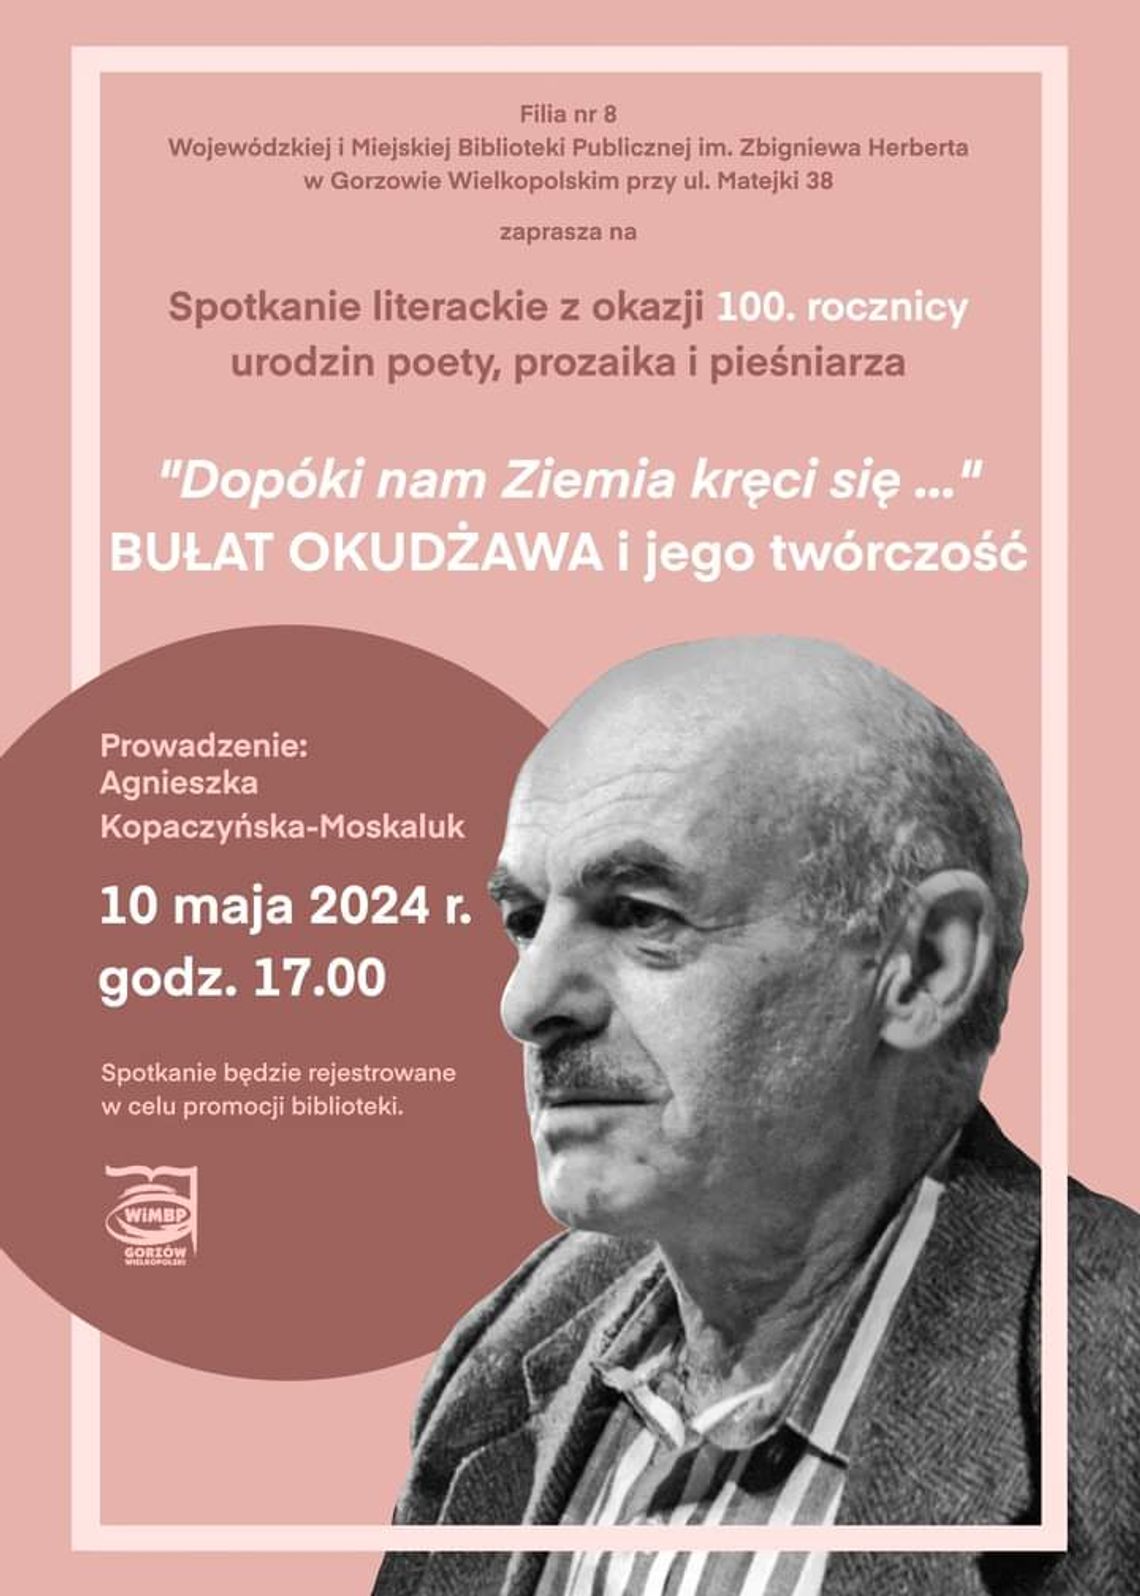 Spotkanie literackie z okazji 100. rocznicy urodzin Bułata Okudżawy